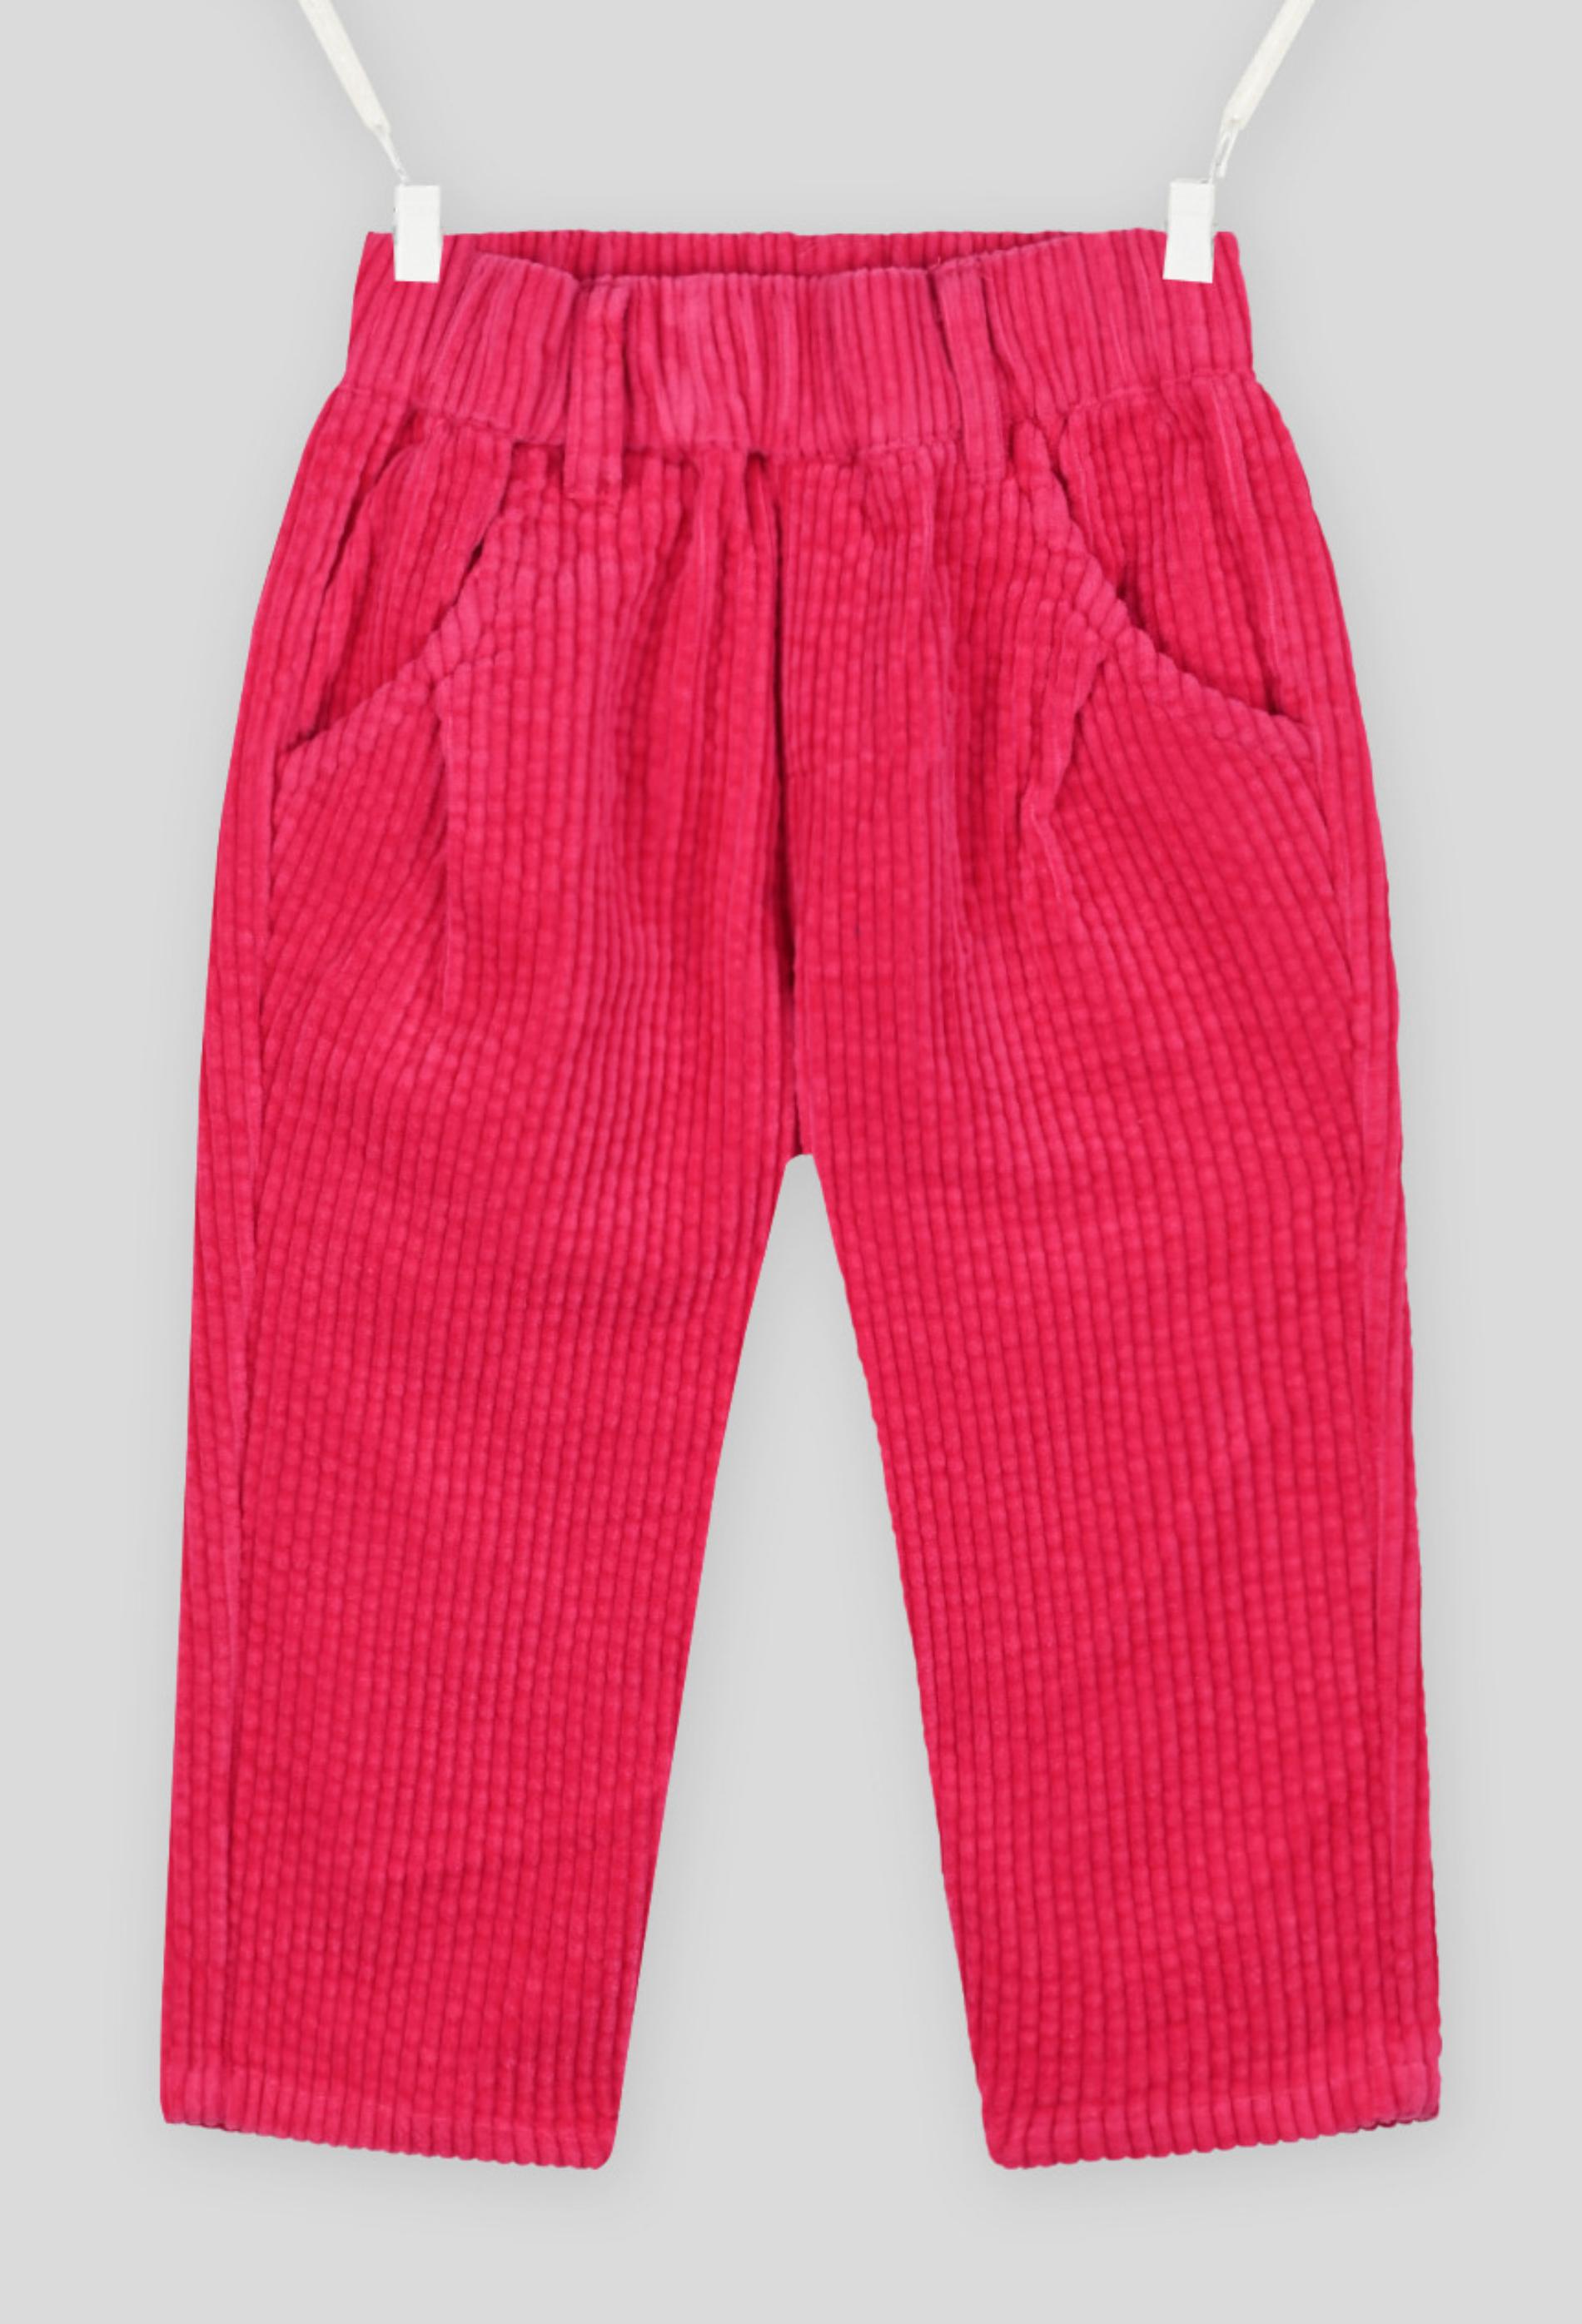 Pantalon uni en velours taille élastique, mixte. OEKO-TEX. 9 mois rose foncé